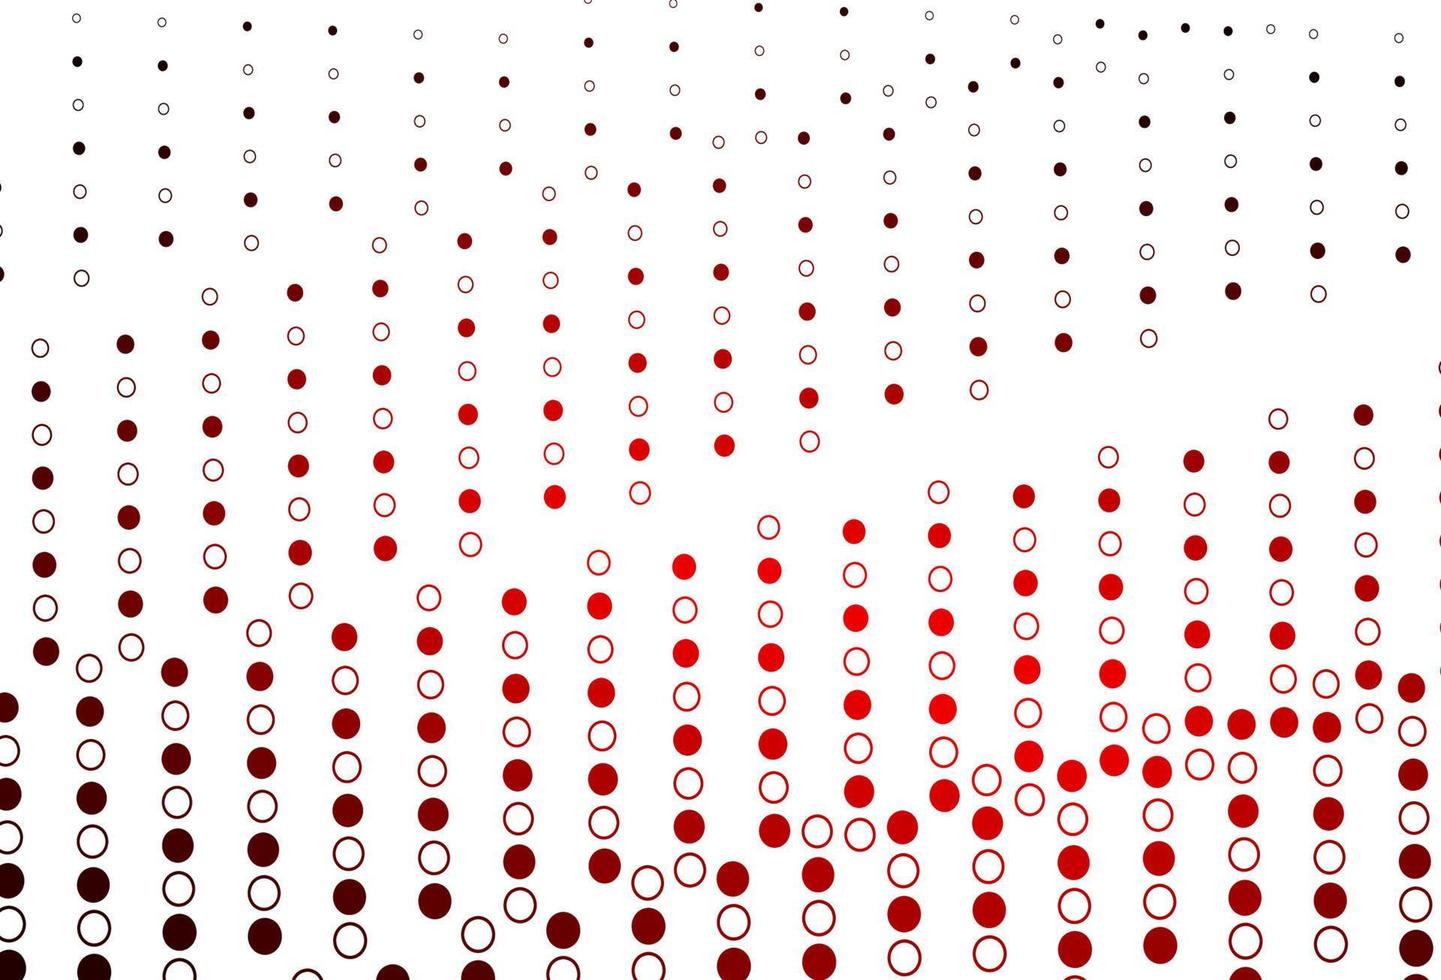 padrão de vetor vermelho claro com esferas.